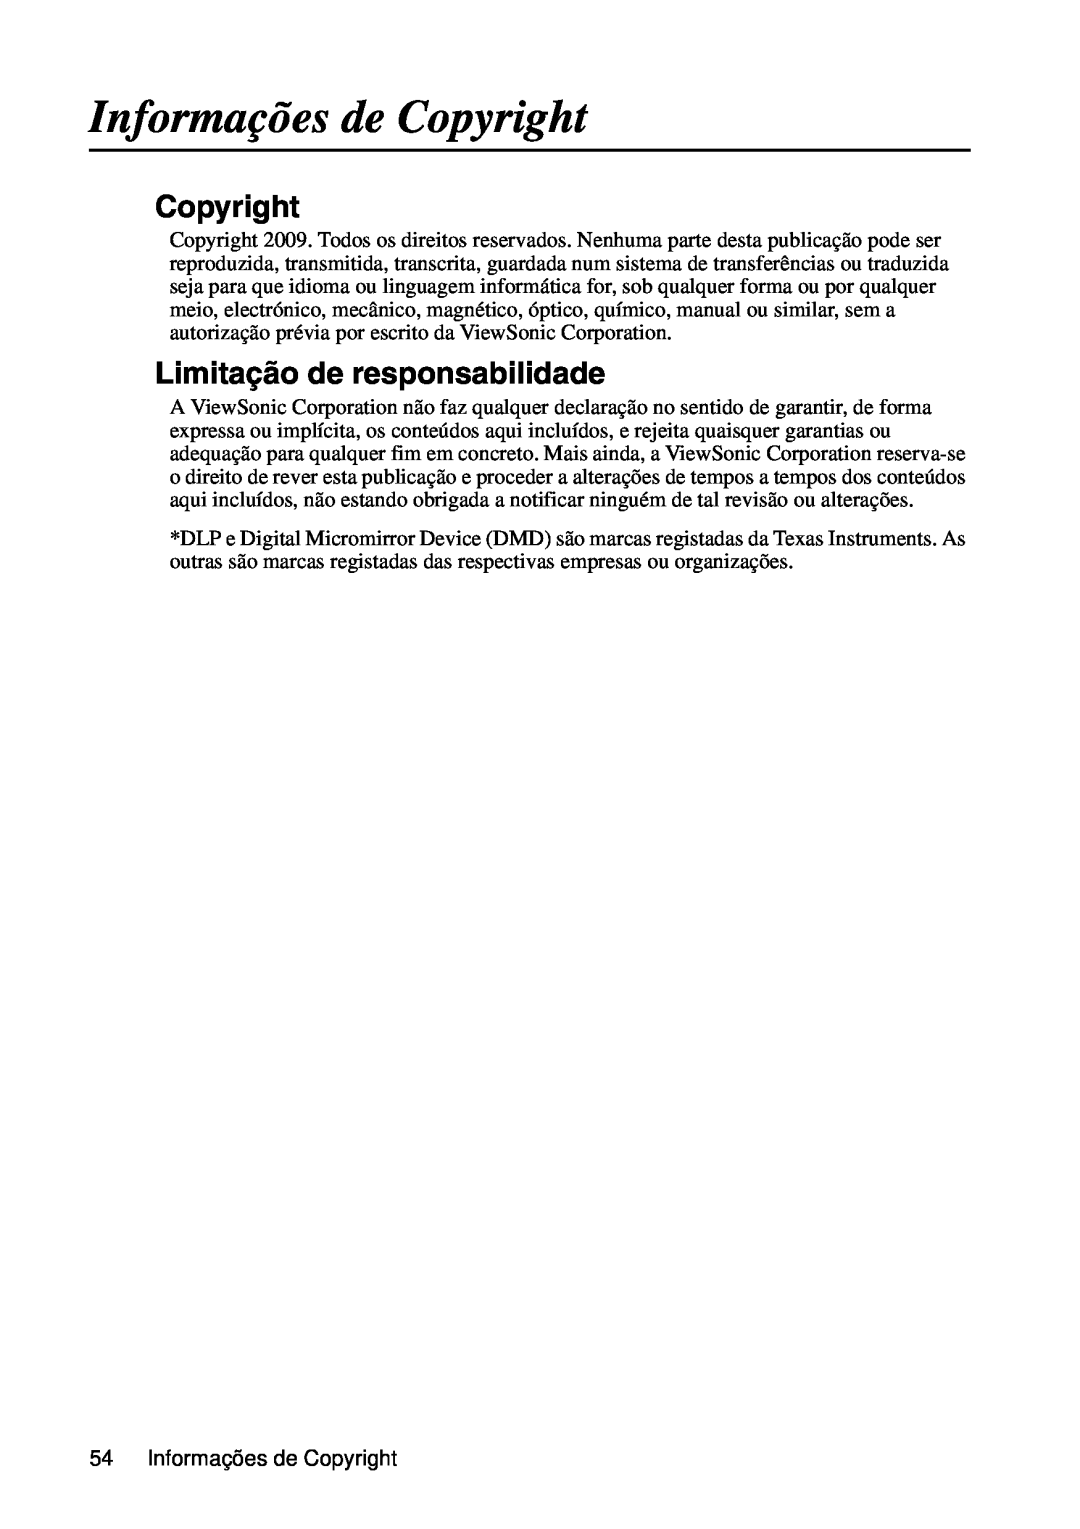 ViewSonic VS12440 manual Informações de Copyright, Limitação de responsabilidade 